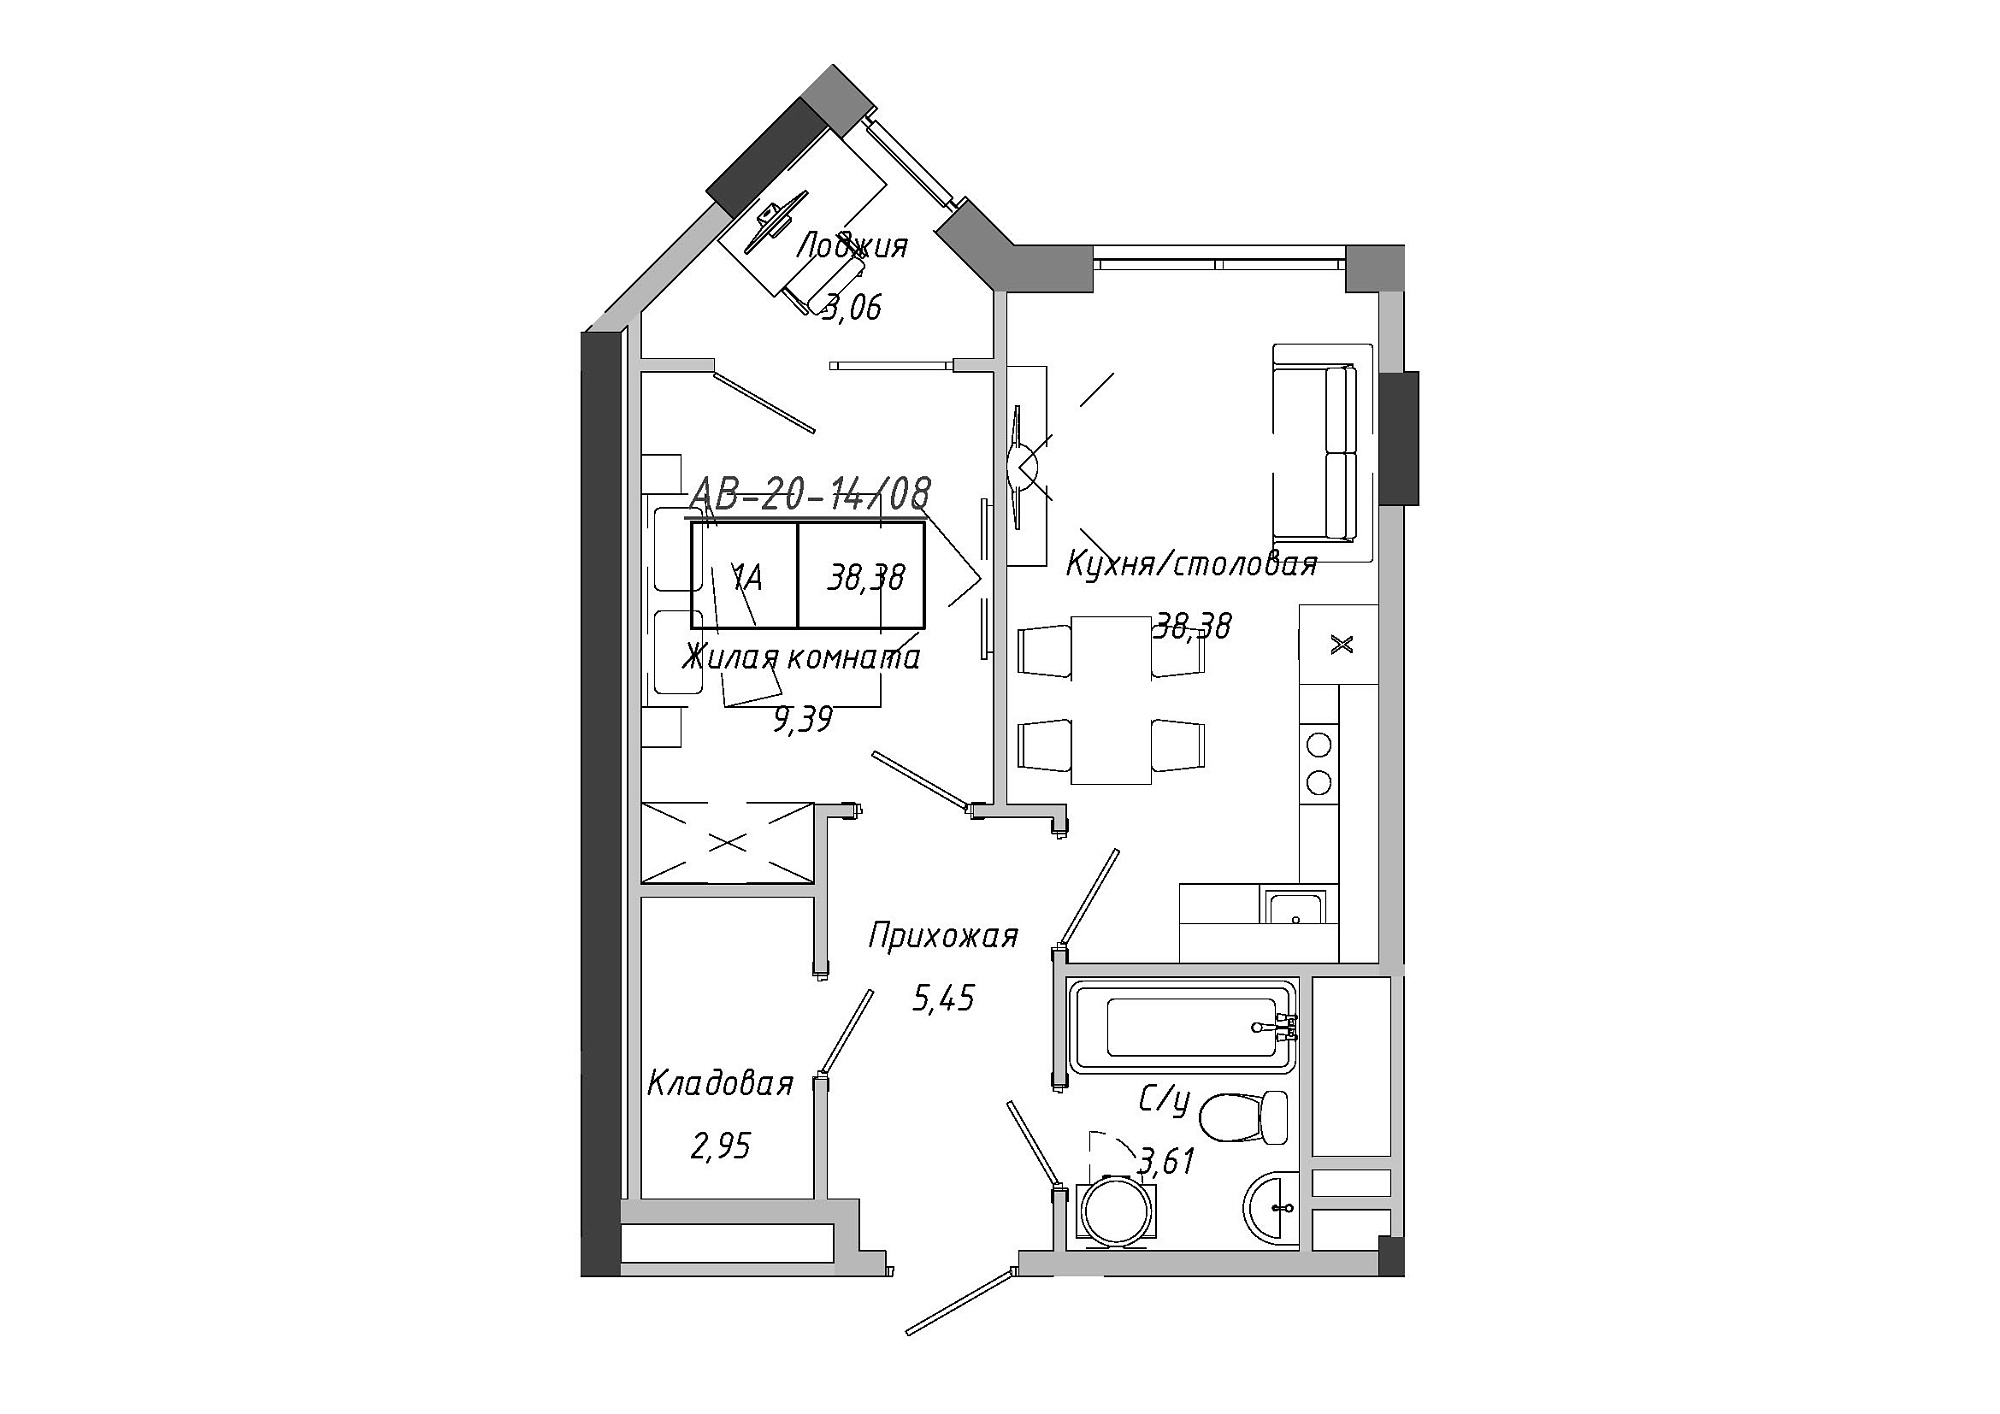 Планування 1-к квартира площею 38.38м2, AB-20-14/00108.